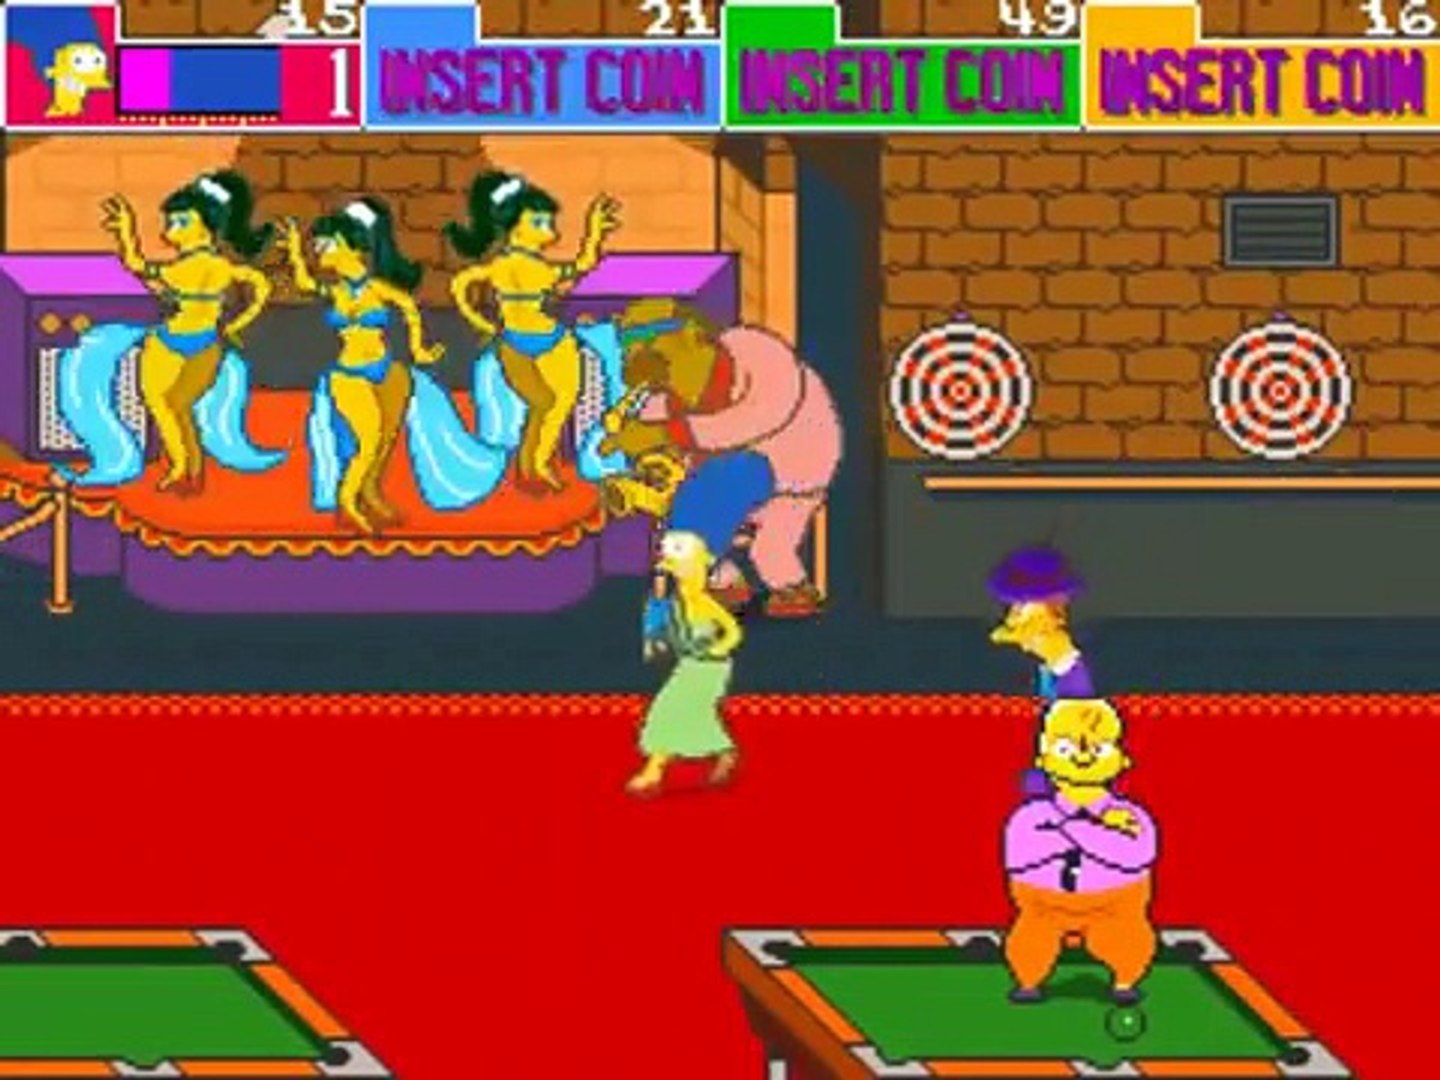 Les Simpson Episode 1 entier en français : Arcade (Old School) - Dailymotion  Video